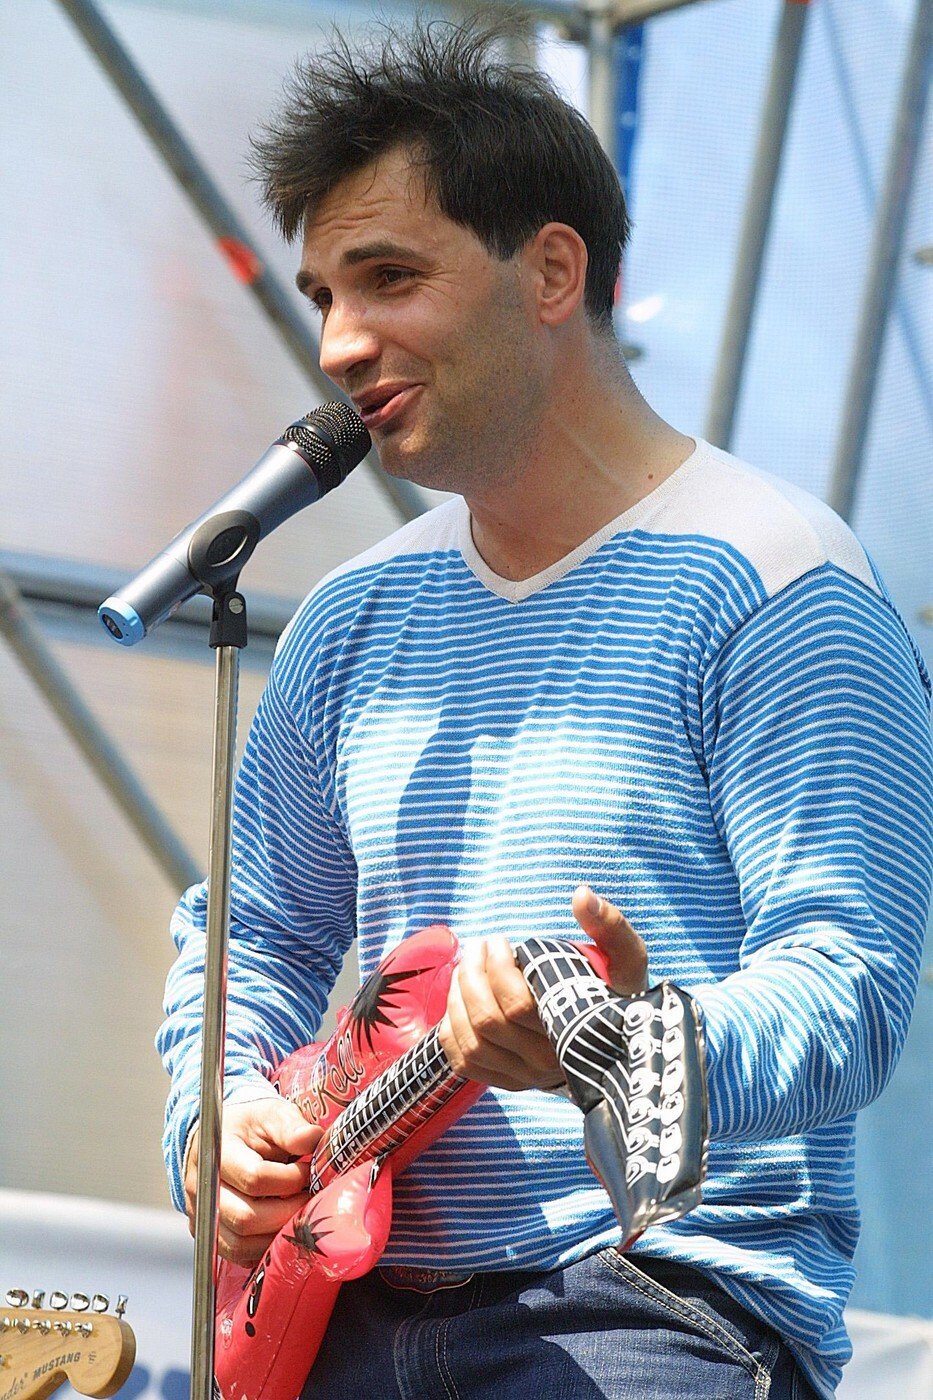 Jiří Macháček v roce 2001 při vystoupení s kapelou Mig 21